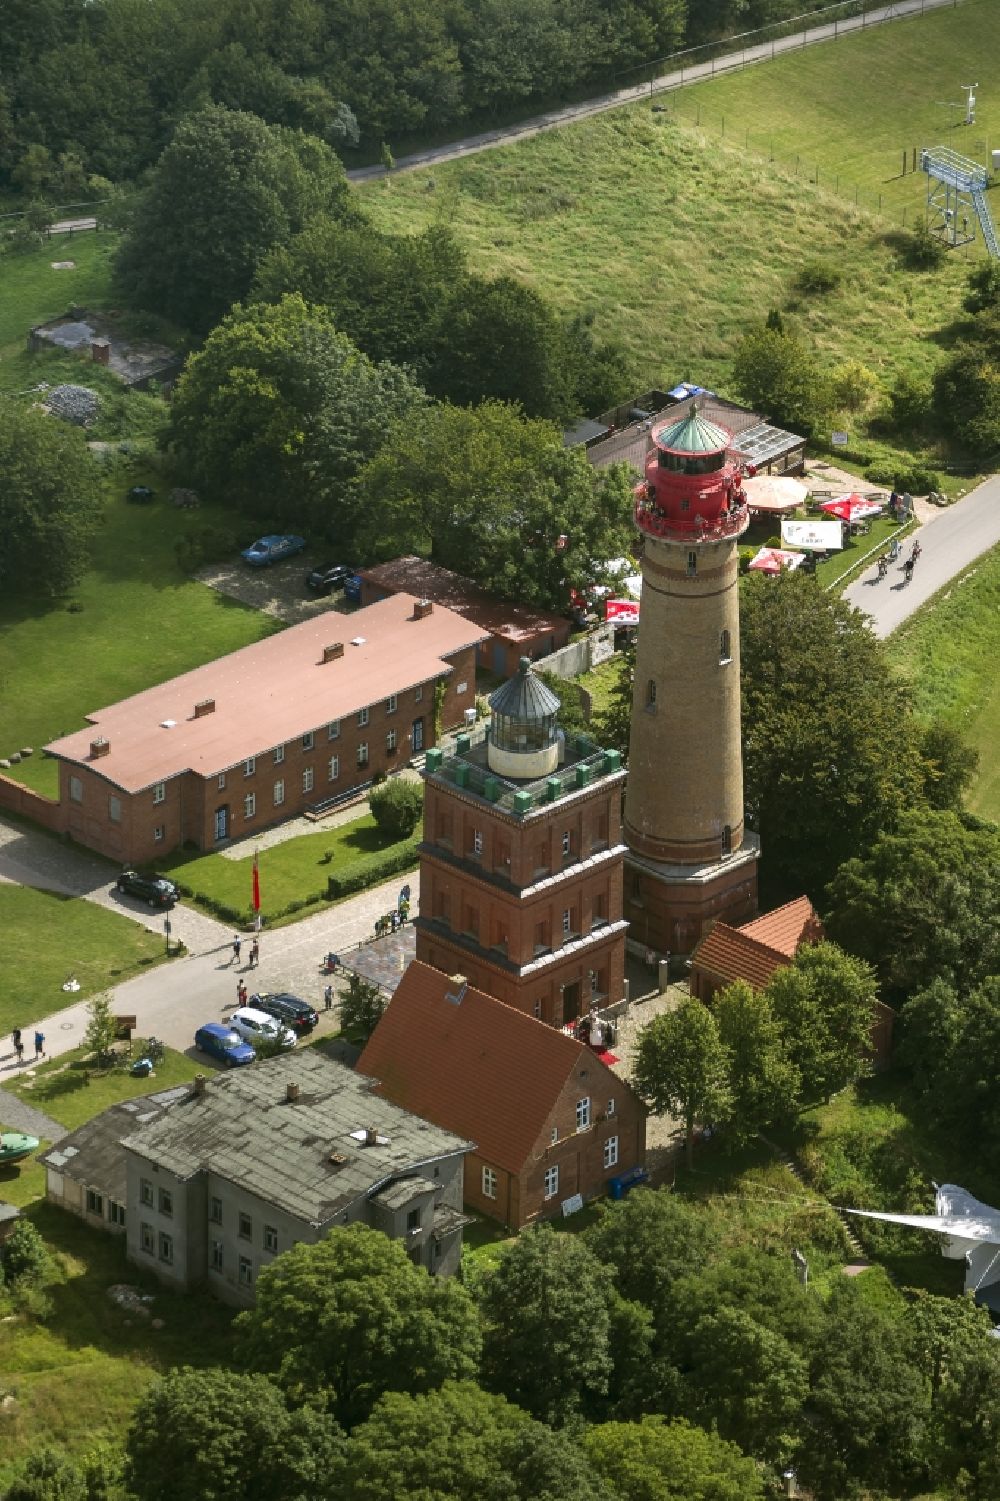 Leuchttürme der Insel Rügen: Fotos, Landkarte, Wissenswertes